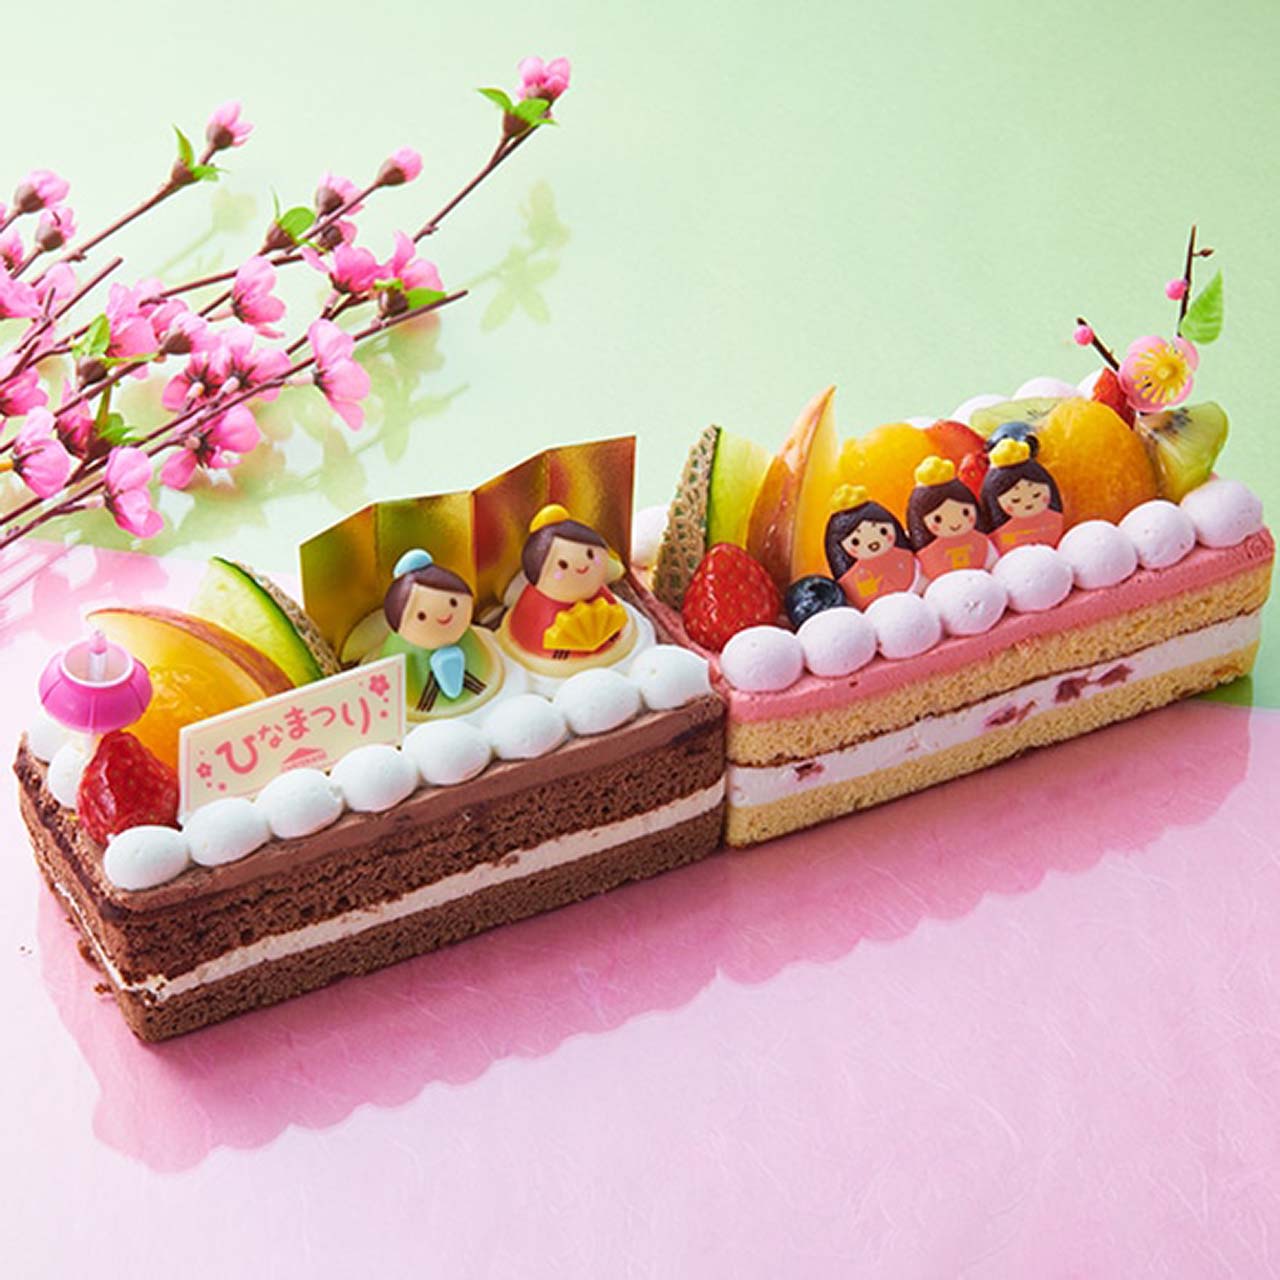 【シャトレーゼ】ひな祭りのお祝いに♪おすすめケーキ10選